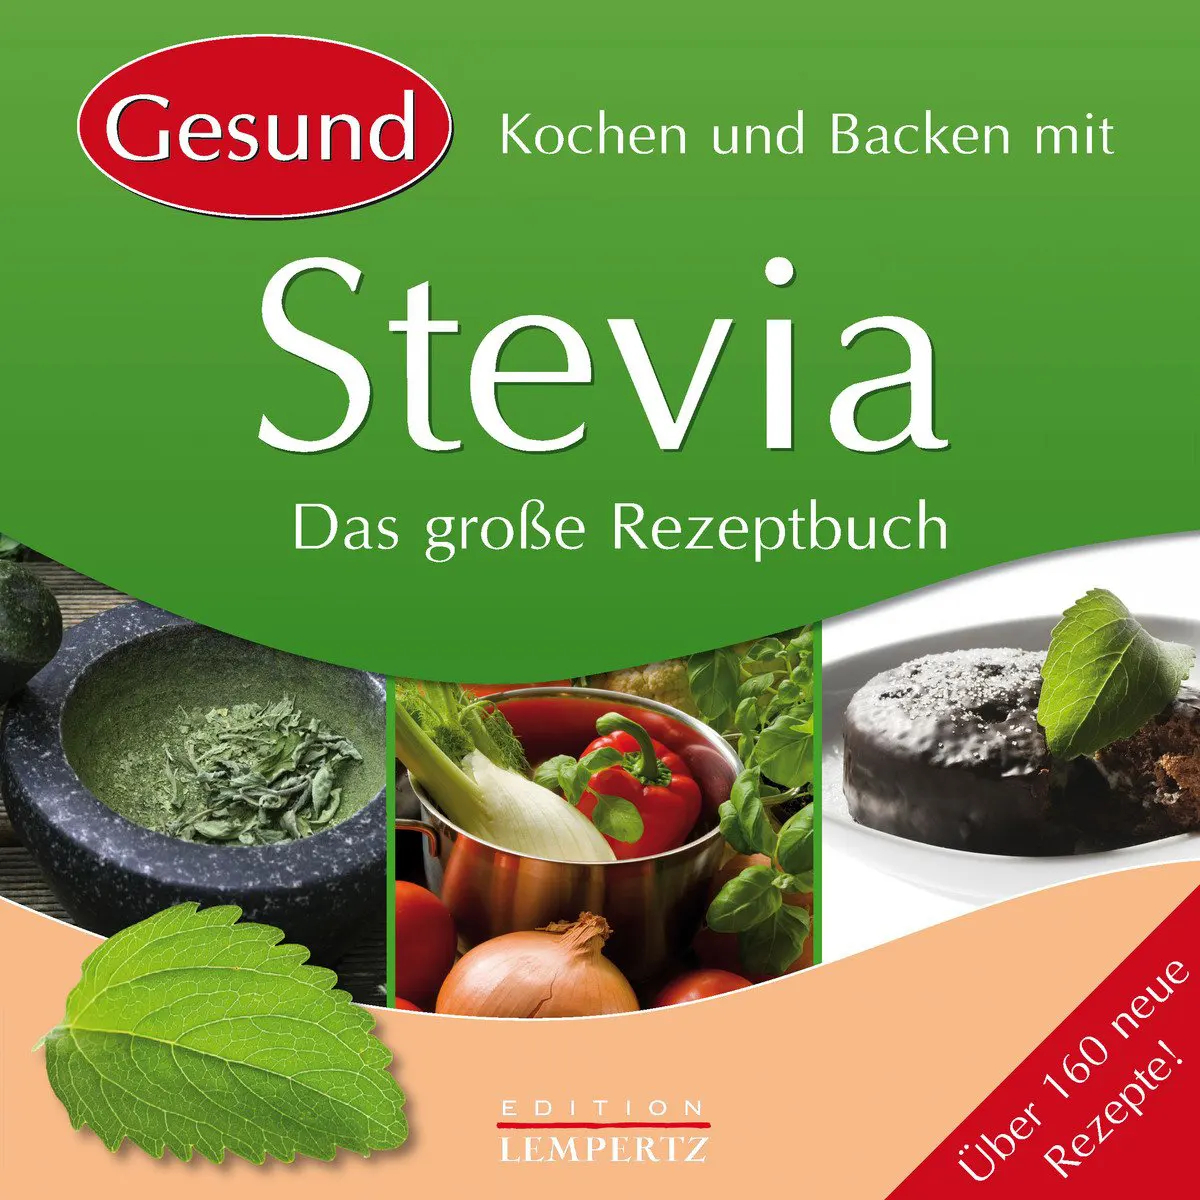 Gesund Kochen und Backen mit Stevia Das große Rezeptbuch